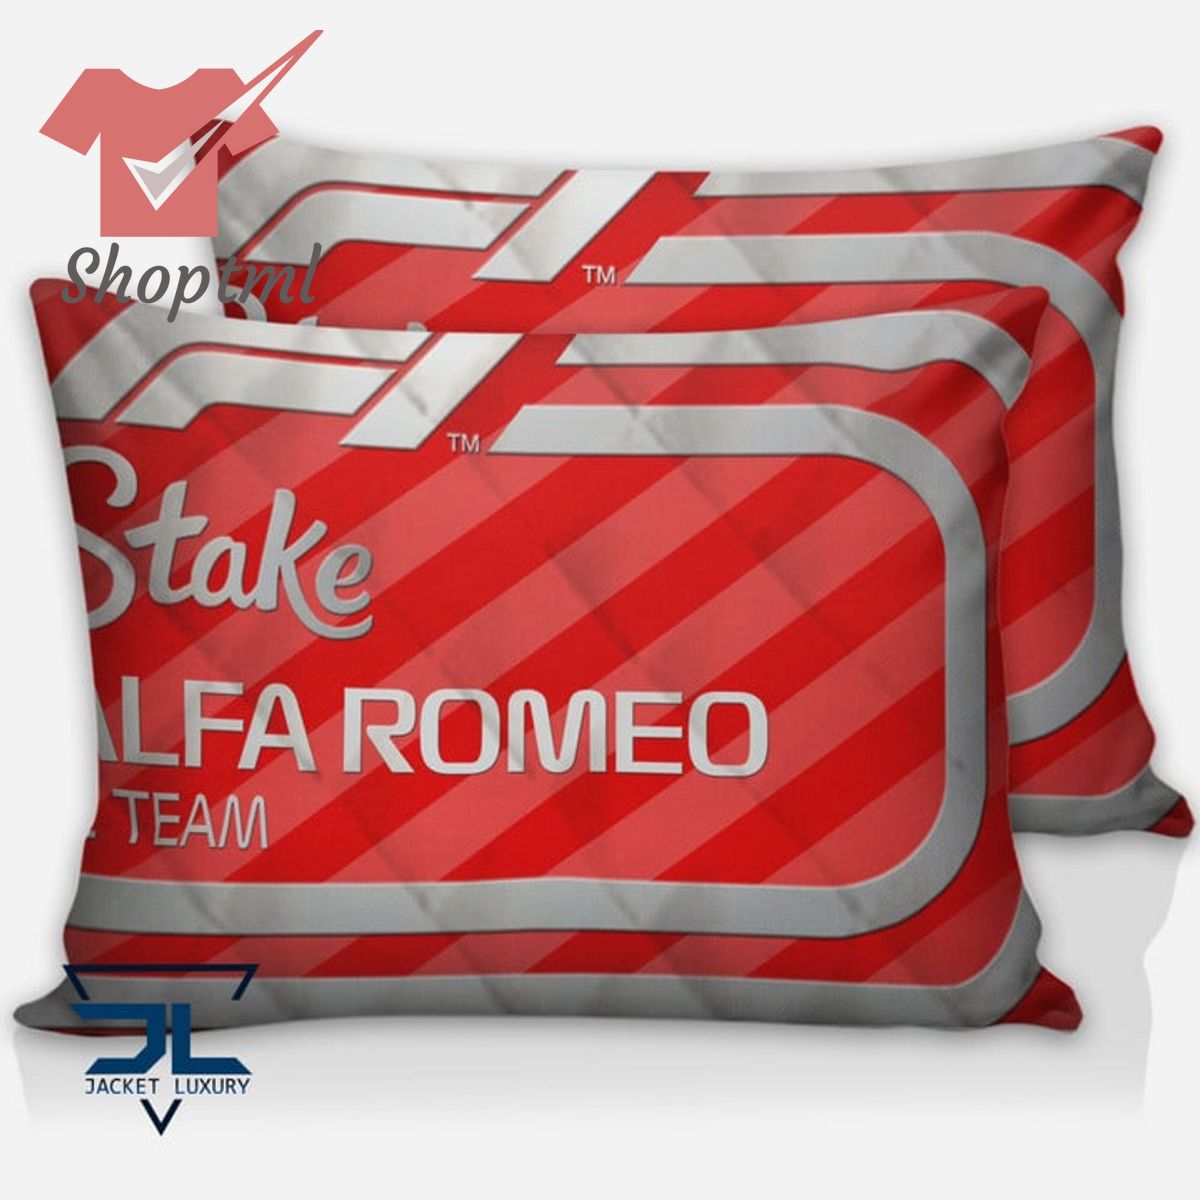 Alfa Romeo F1 Team Quilt Set